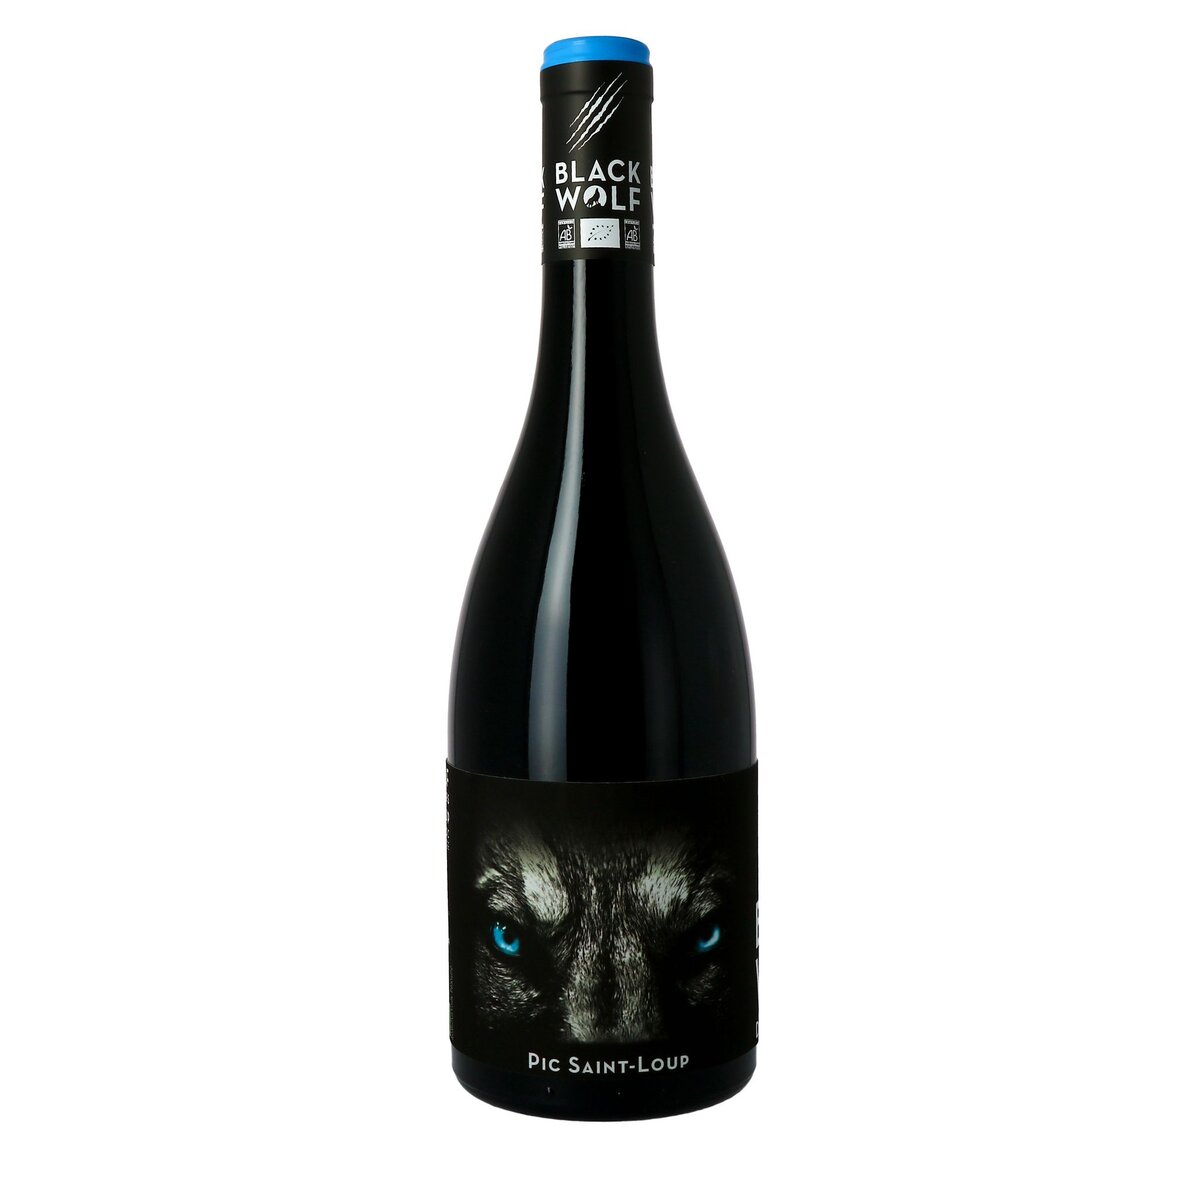 Vin rouge AOP Pic-Saint-Loup Languedoc bio Black Wolf 2018 75cl